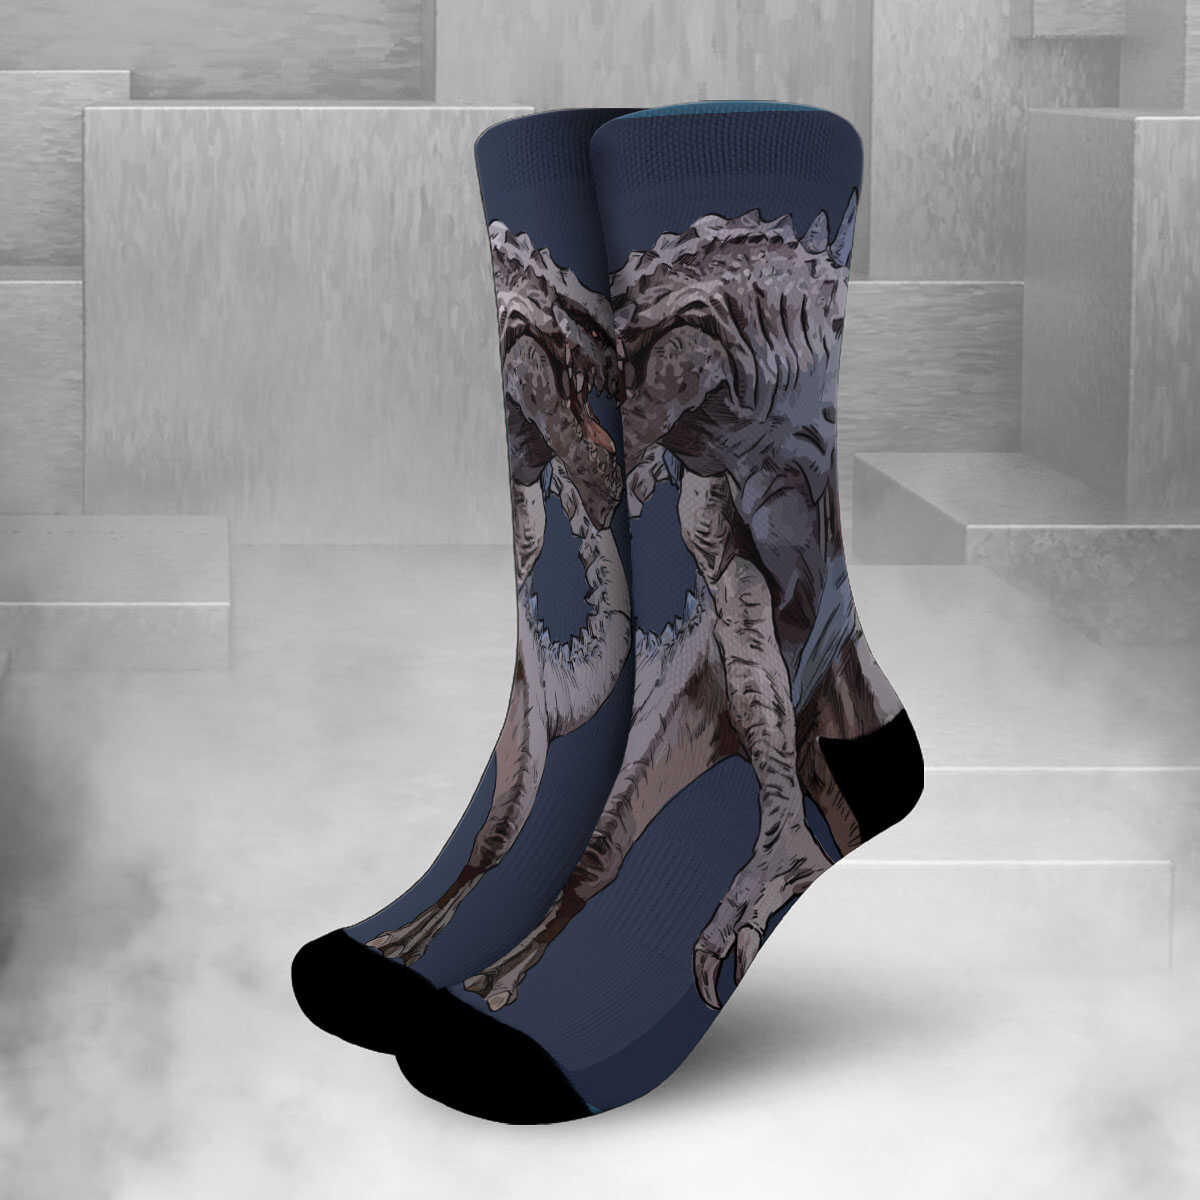 Godzilla The Salesman Socks